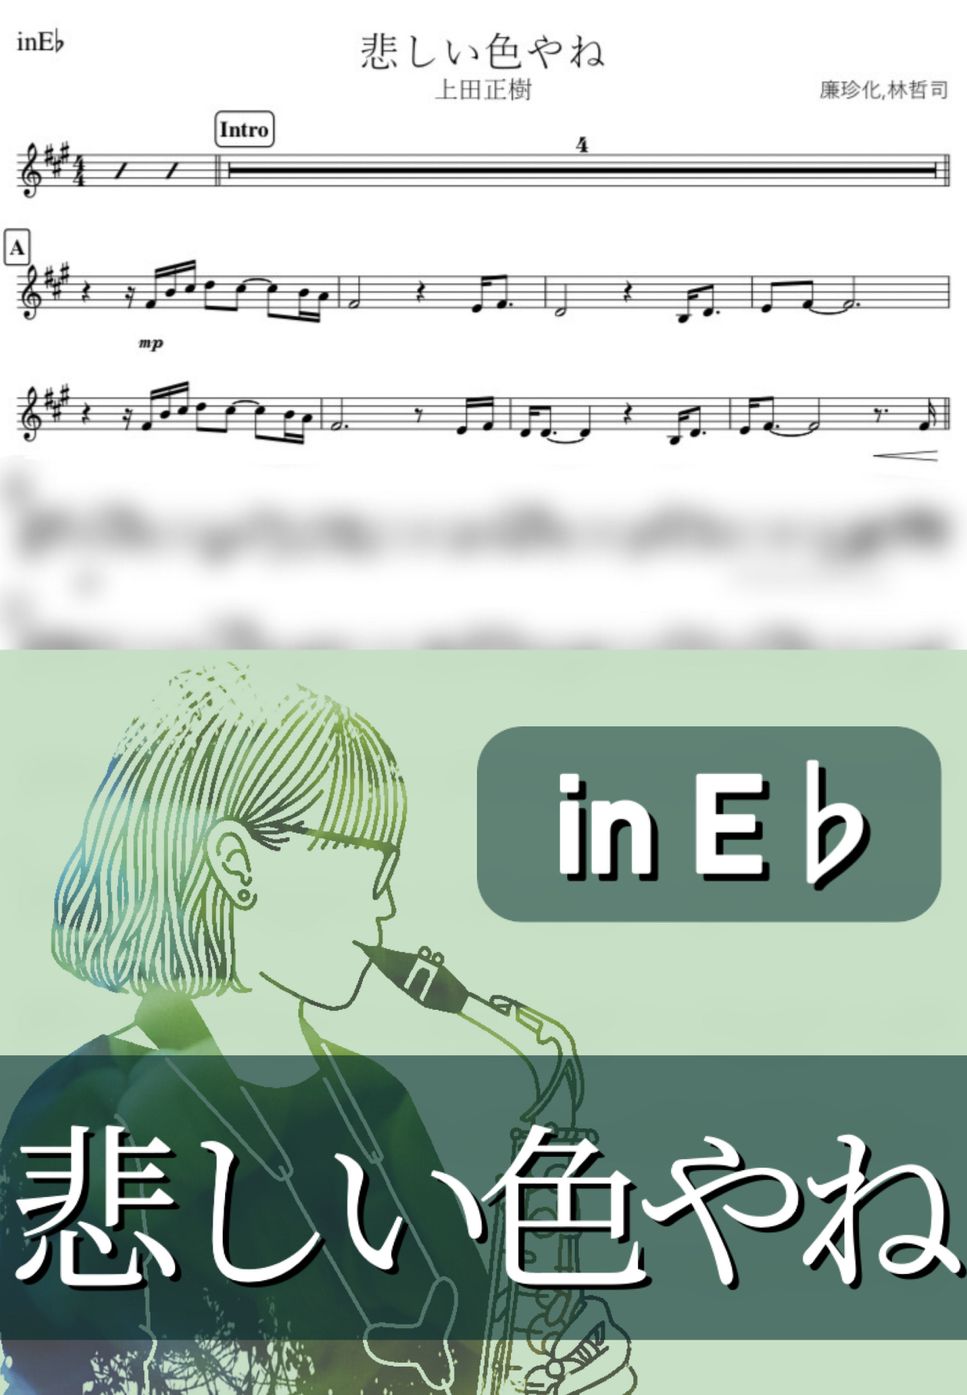 上田正樹 - 悲しい色やね (E♭) by kanamusic